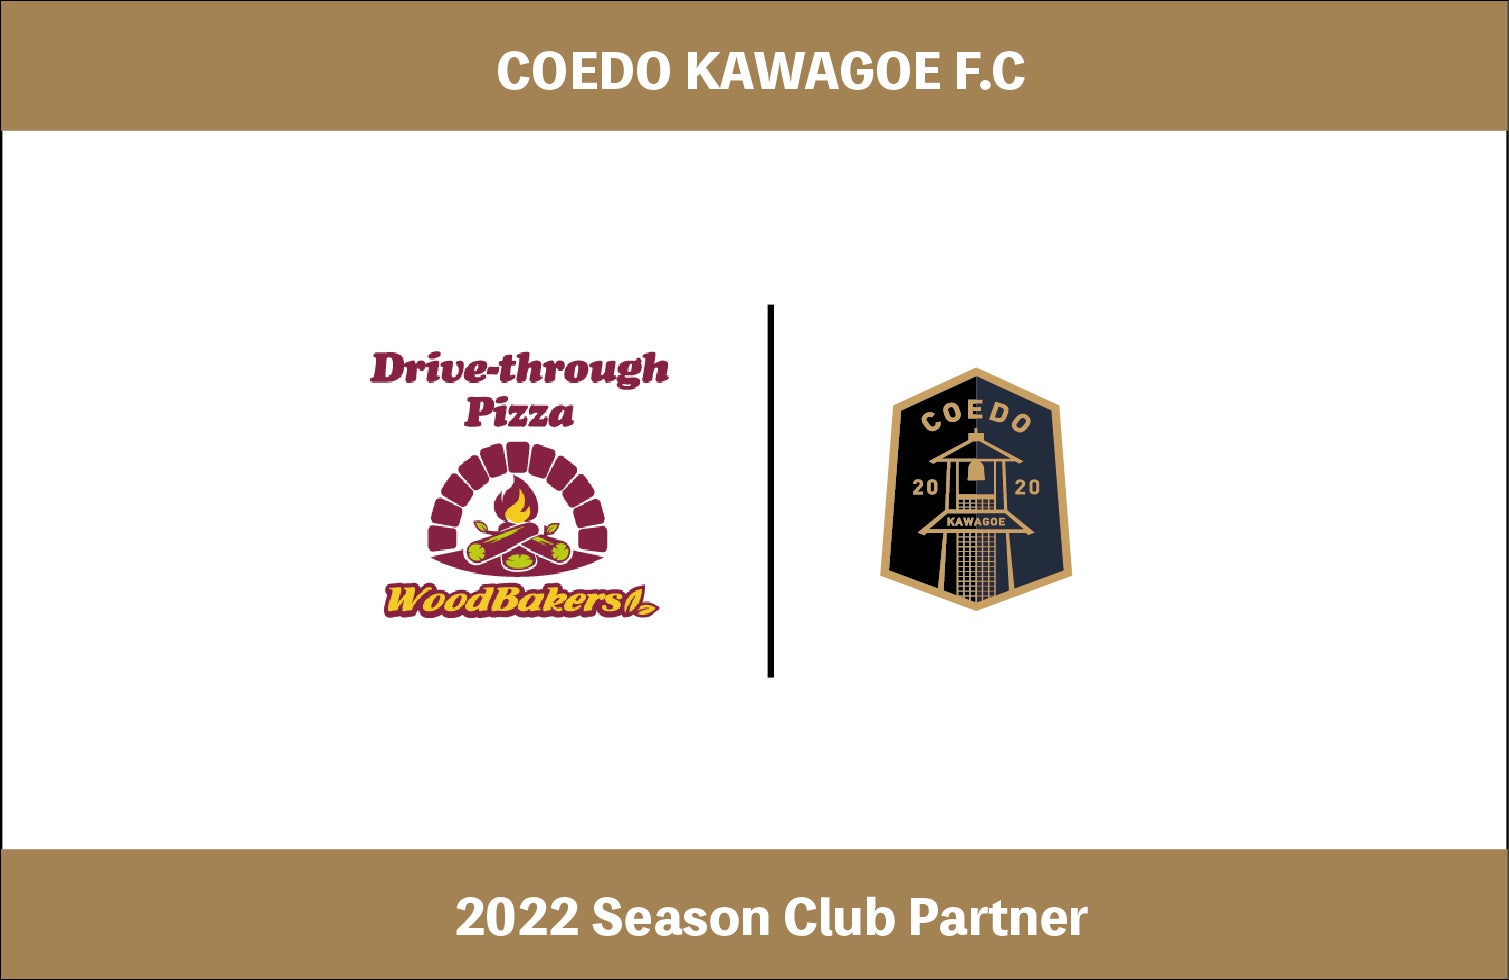 埼玉県川越市からJリーグを目指す「COEDO KAWAGOE F.C」、川越で窯焼きハウス＆ドライブスルーピッツァウッドベイカーズを運営の有限会社ウェックと2022シーズンのクラブパートナー契約を締結